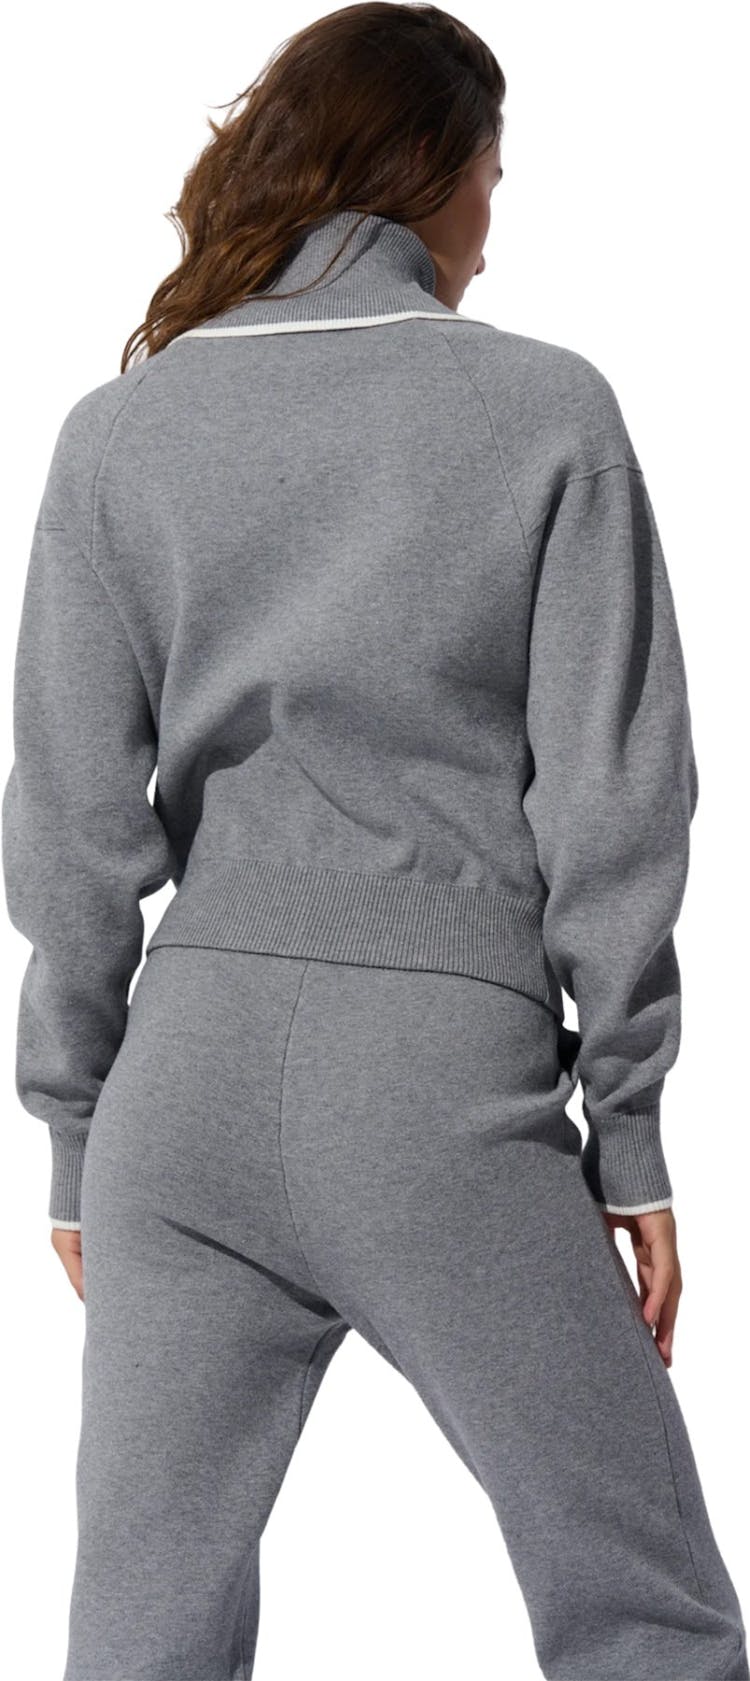 Numéro de l'image de la galerie de produits 2 pour le produit Pantalon de jogging en tricot - Femme